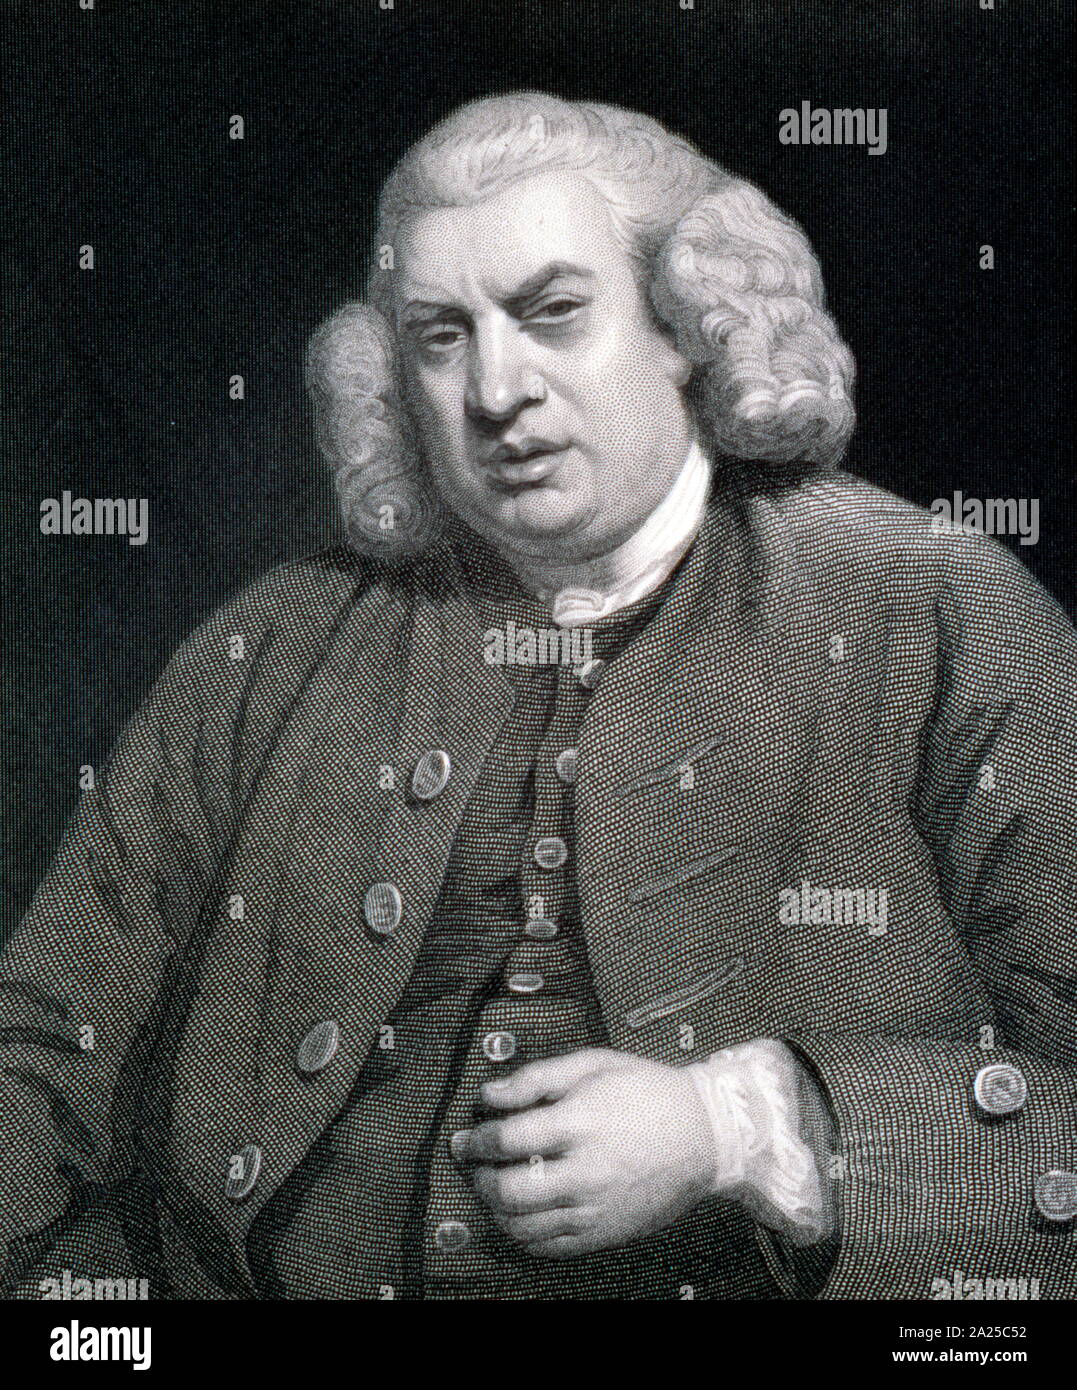 Samuel Johnson (1709 - 1784), escritor inglés que hizo contribuciones duraderas a la literatura inglesa como poeta, dramaturgo, ensayista, moralista, crítico literario, biógrafo, editor y lexicógrafo. Foto de stock